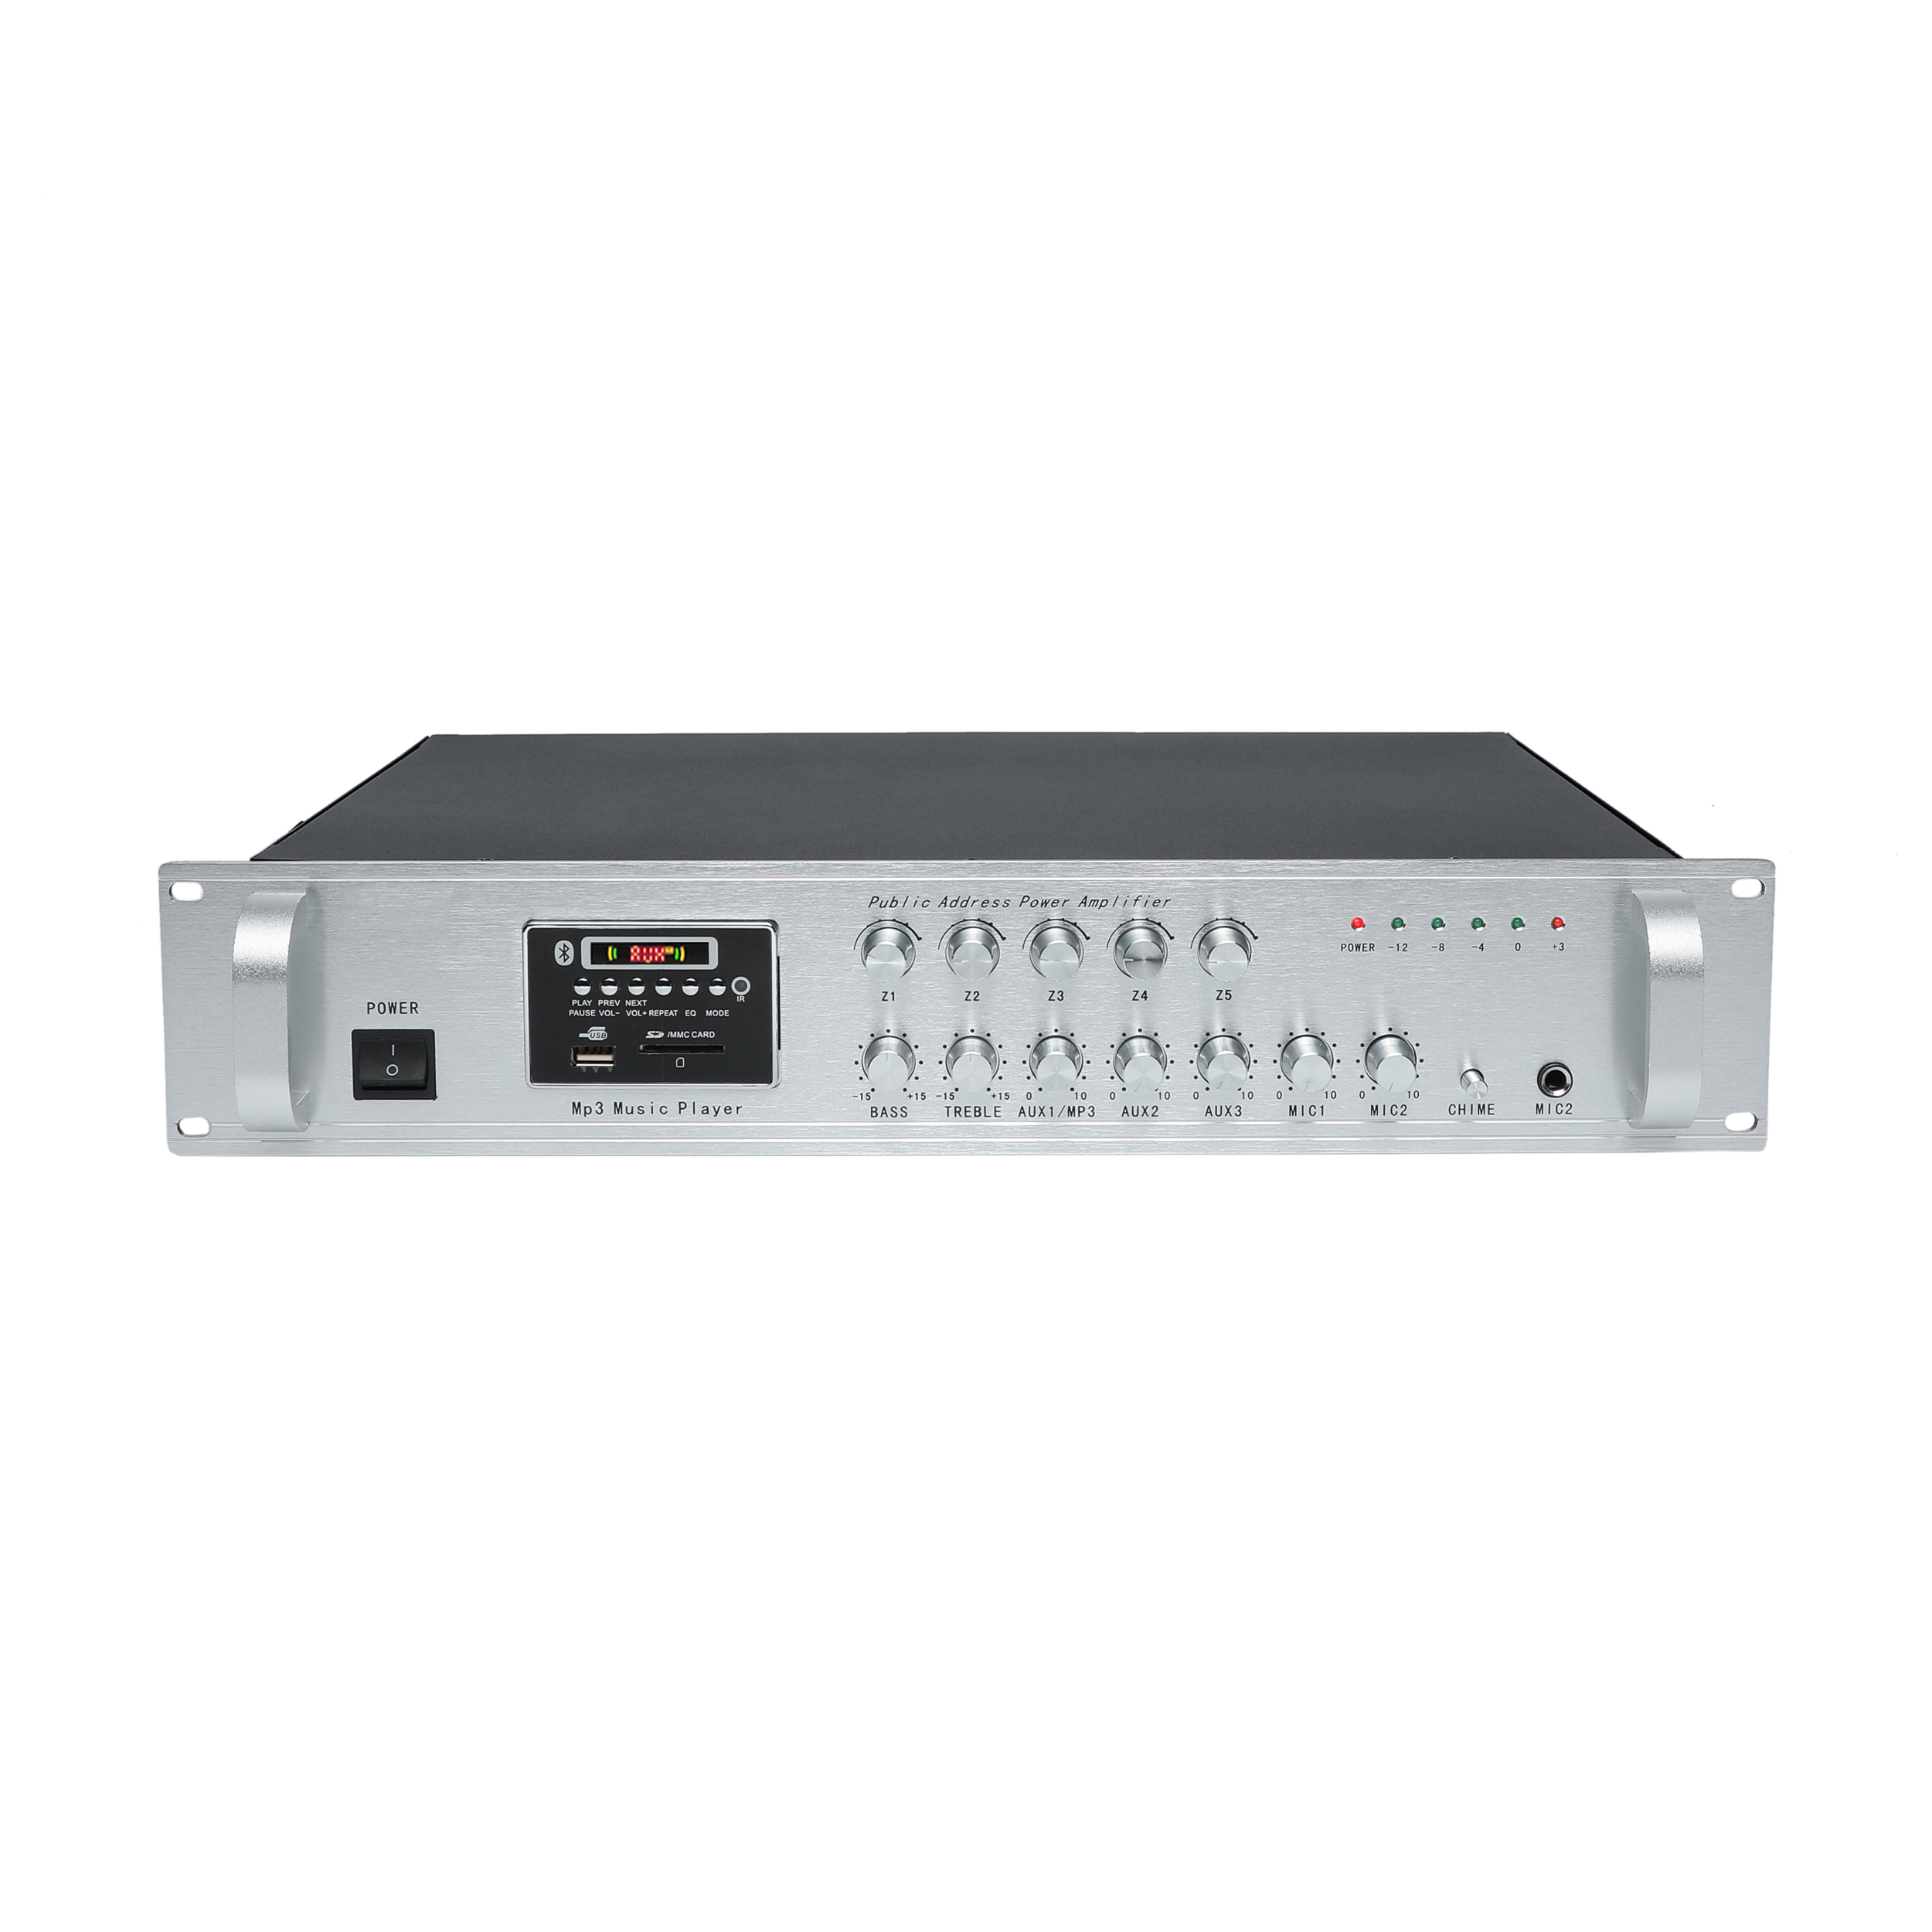 USB-5080A-5070A(2U) 80W